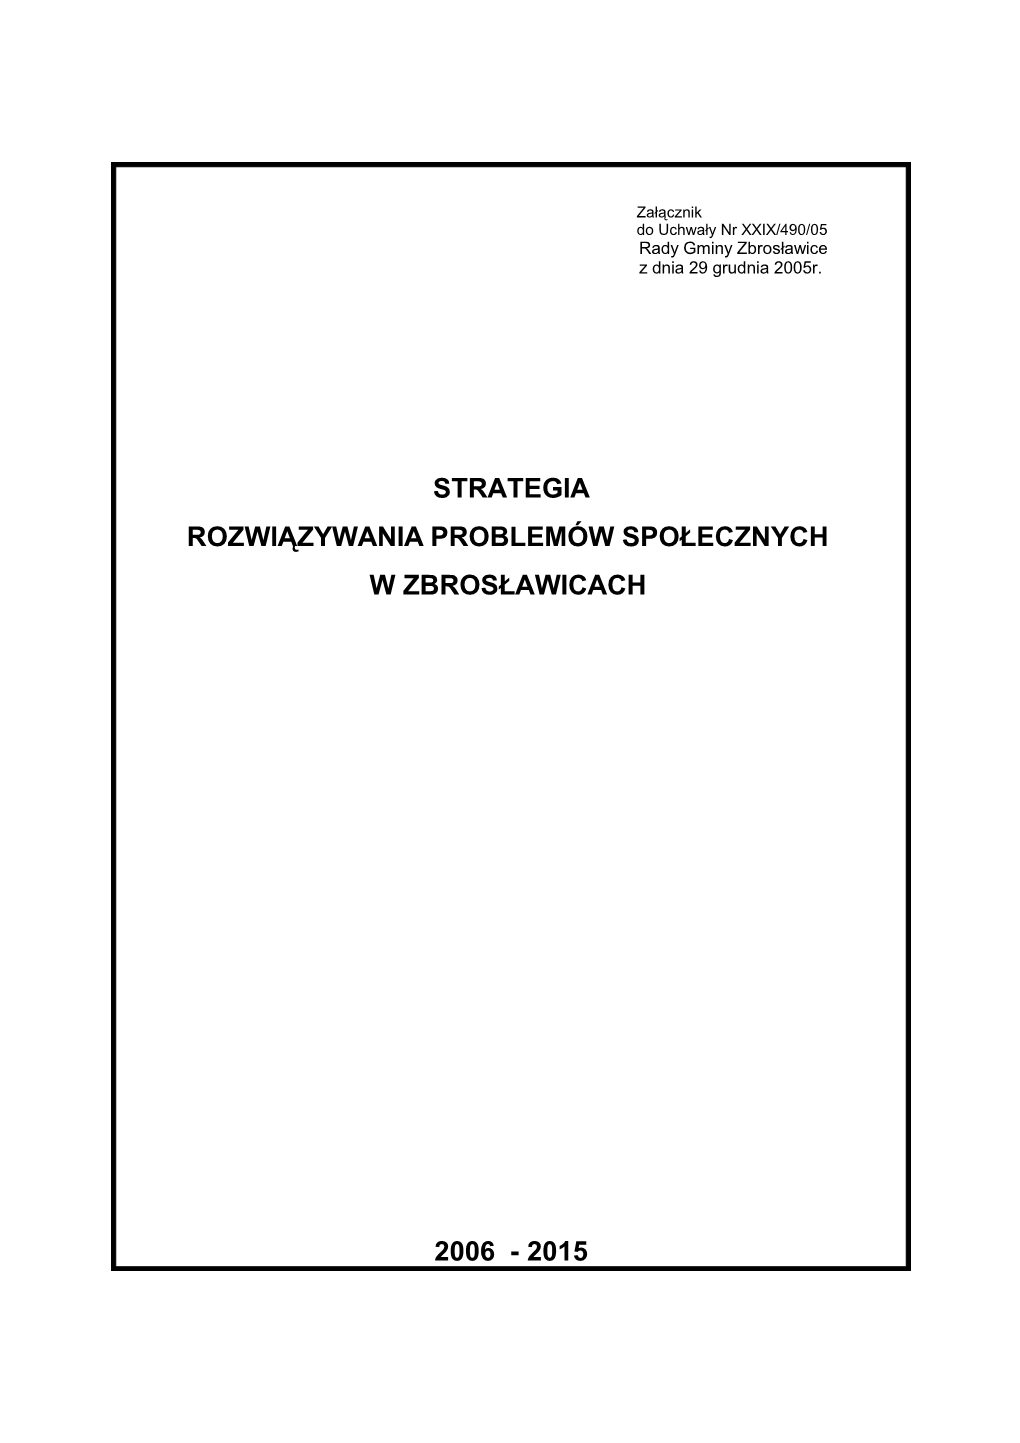 Strategia Rozwiązywania Problemów Społecznych W Zbrosławicach 2006